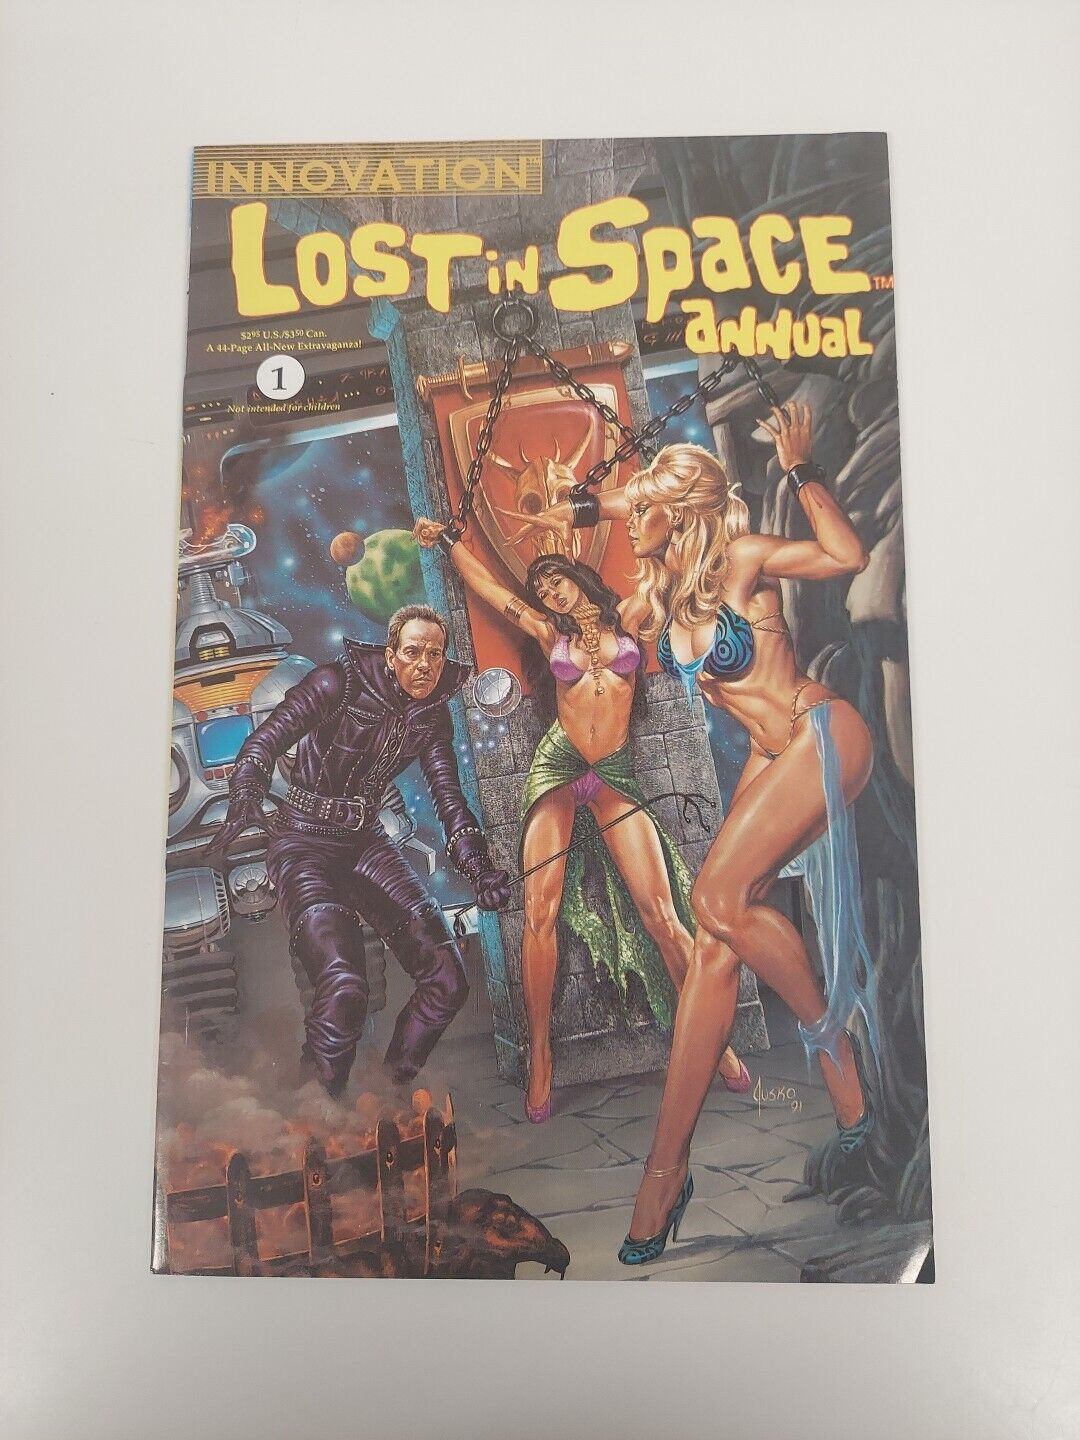 Lost in Space Annual #1 ~ INNOVATION 1992 ~ JOE JUSKO - bondage cover F